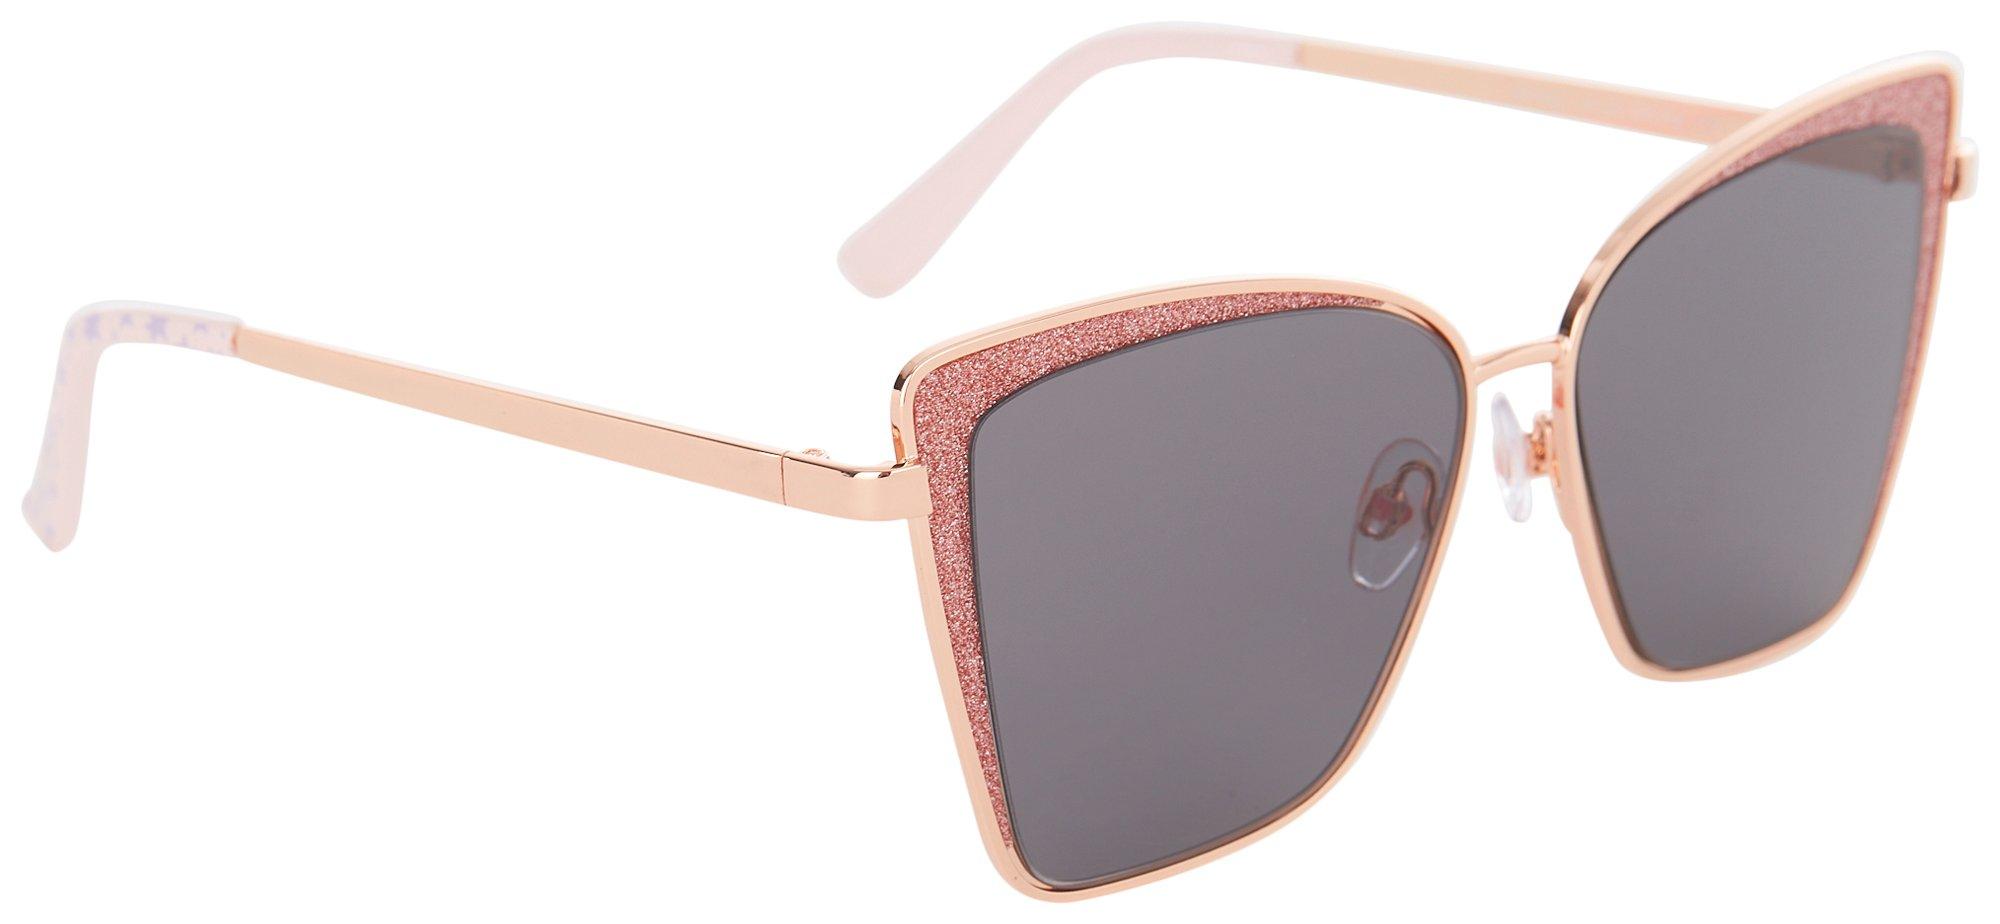 Betsey Johnson Womens Glitter Cateye Sunglasses